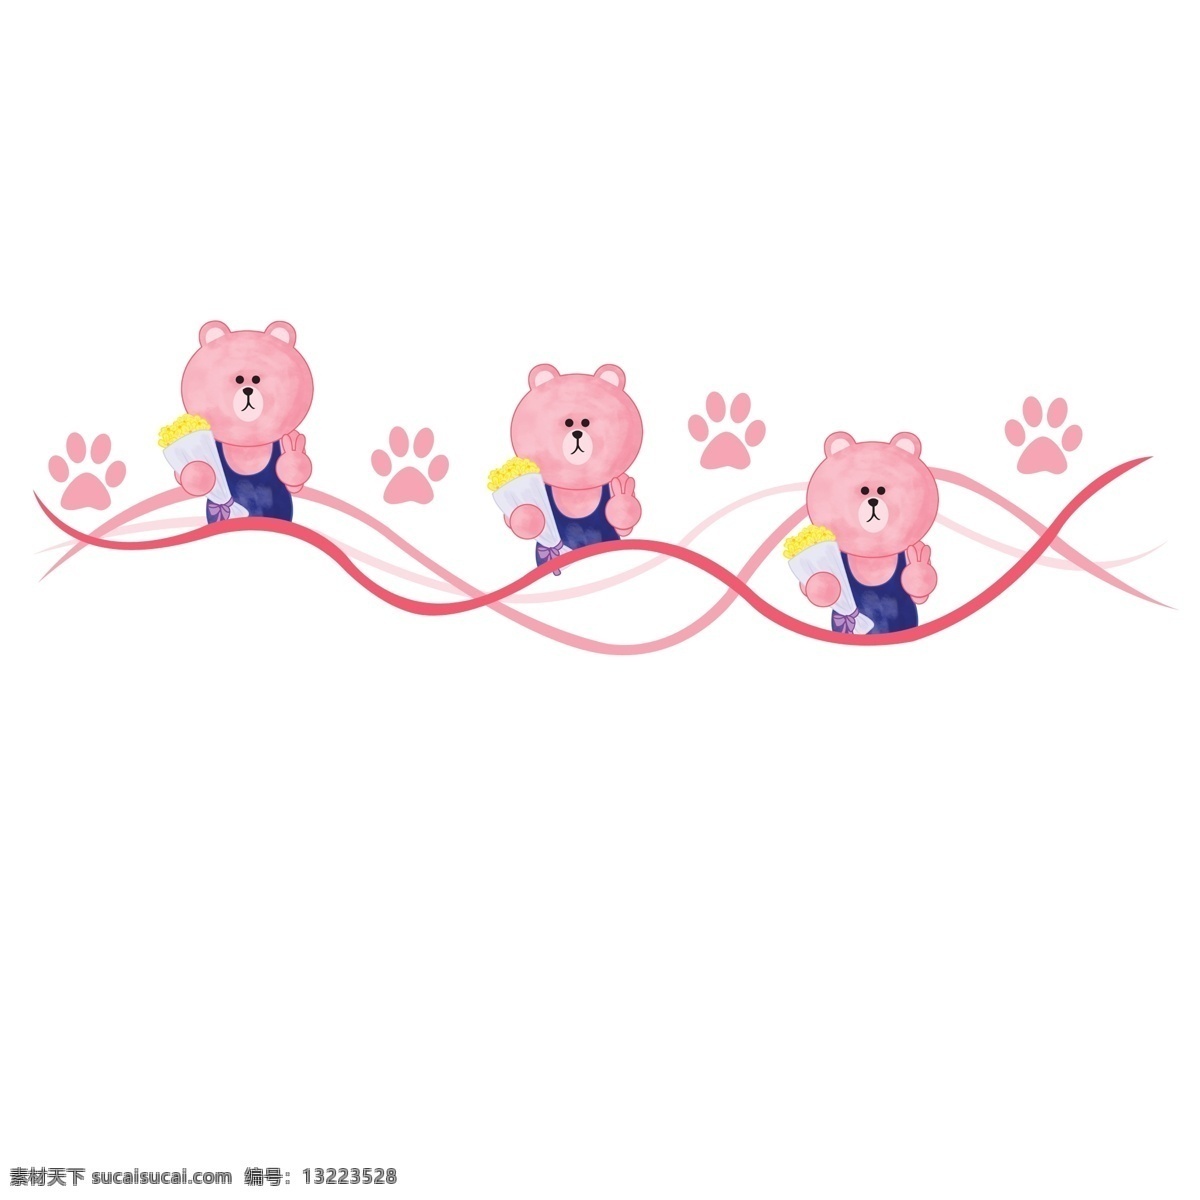 小 熊 分割线 卡通 插画 粉色的分割线 卡通插画 分割线插画 简易分割线 小熊分割线 可爱的小熊